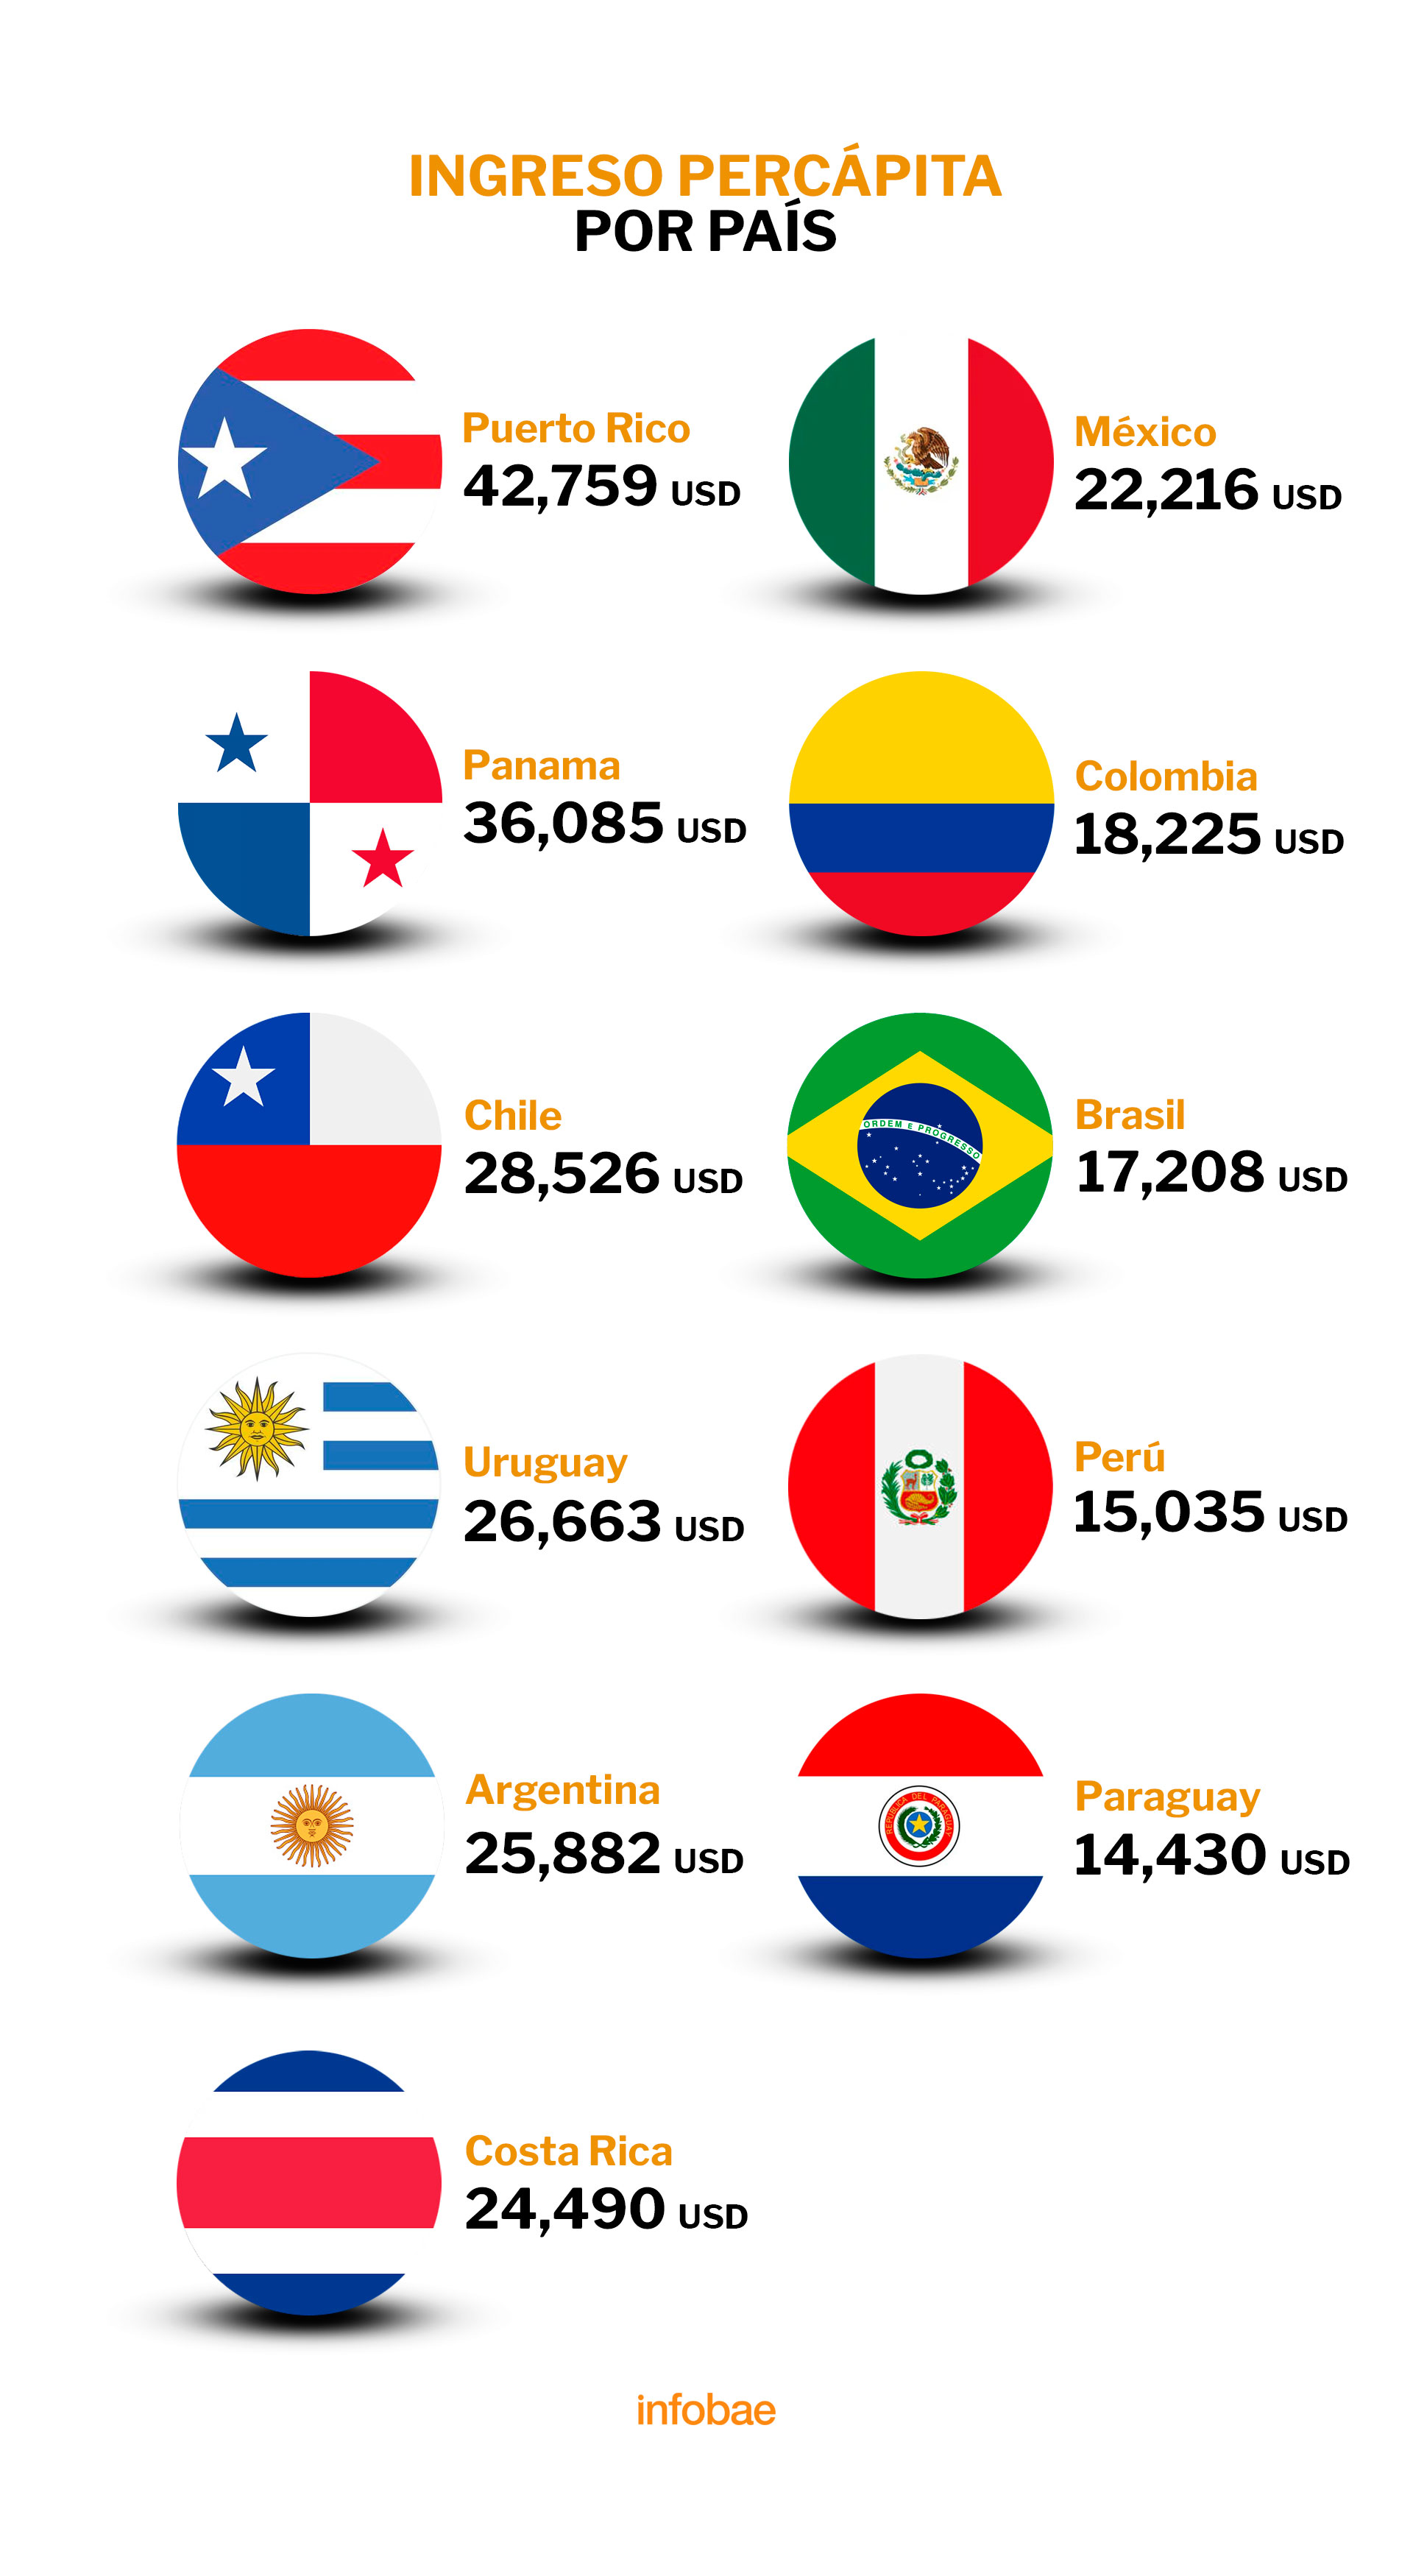 ¿Qué es más rico México o Perú